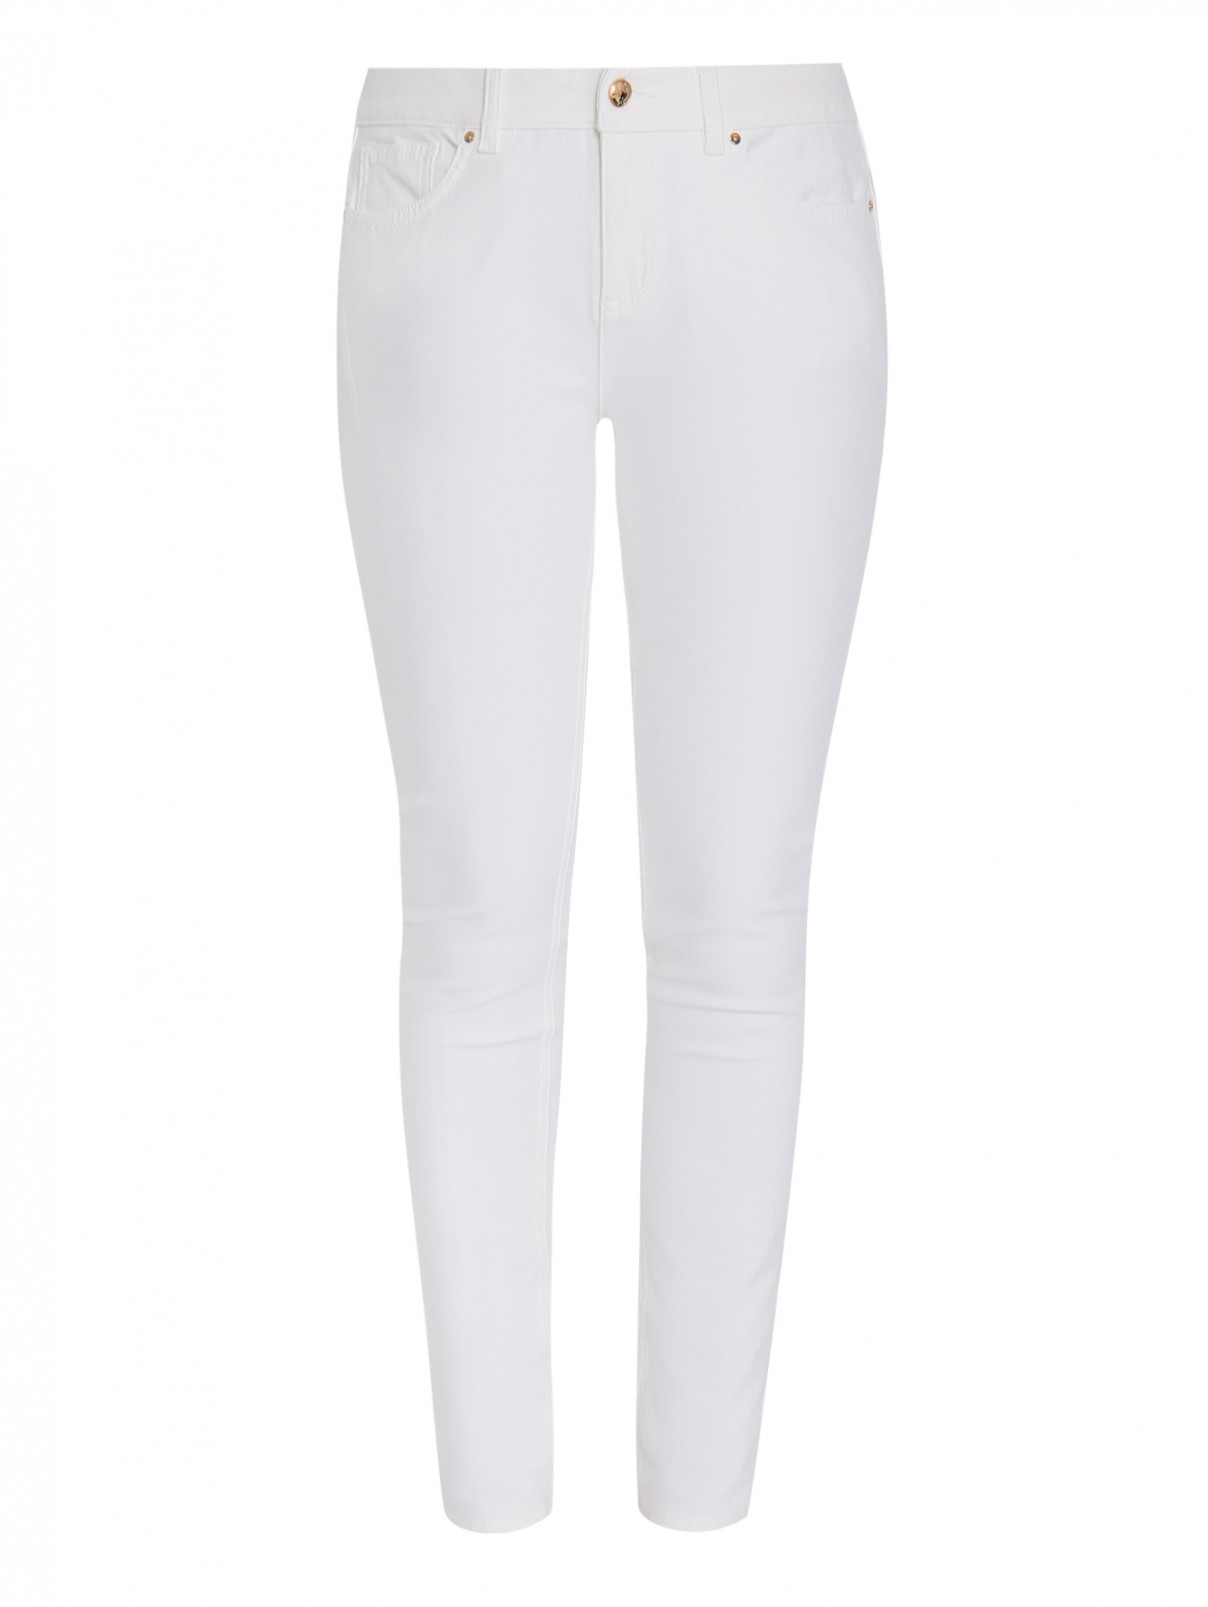 Узкие джинсы из плотного эластичного денима Ashley Graham x Marina Rinaldi  –  Общий вид  – Цвет:  Белый